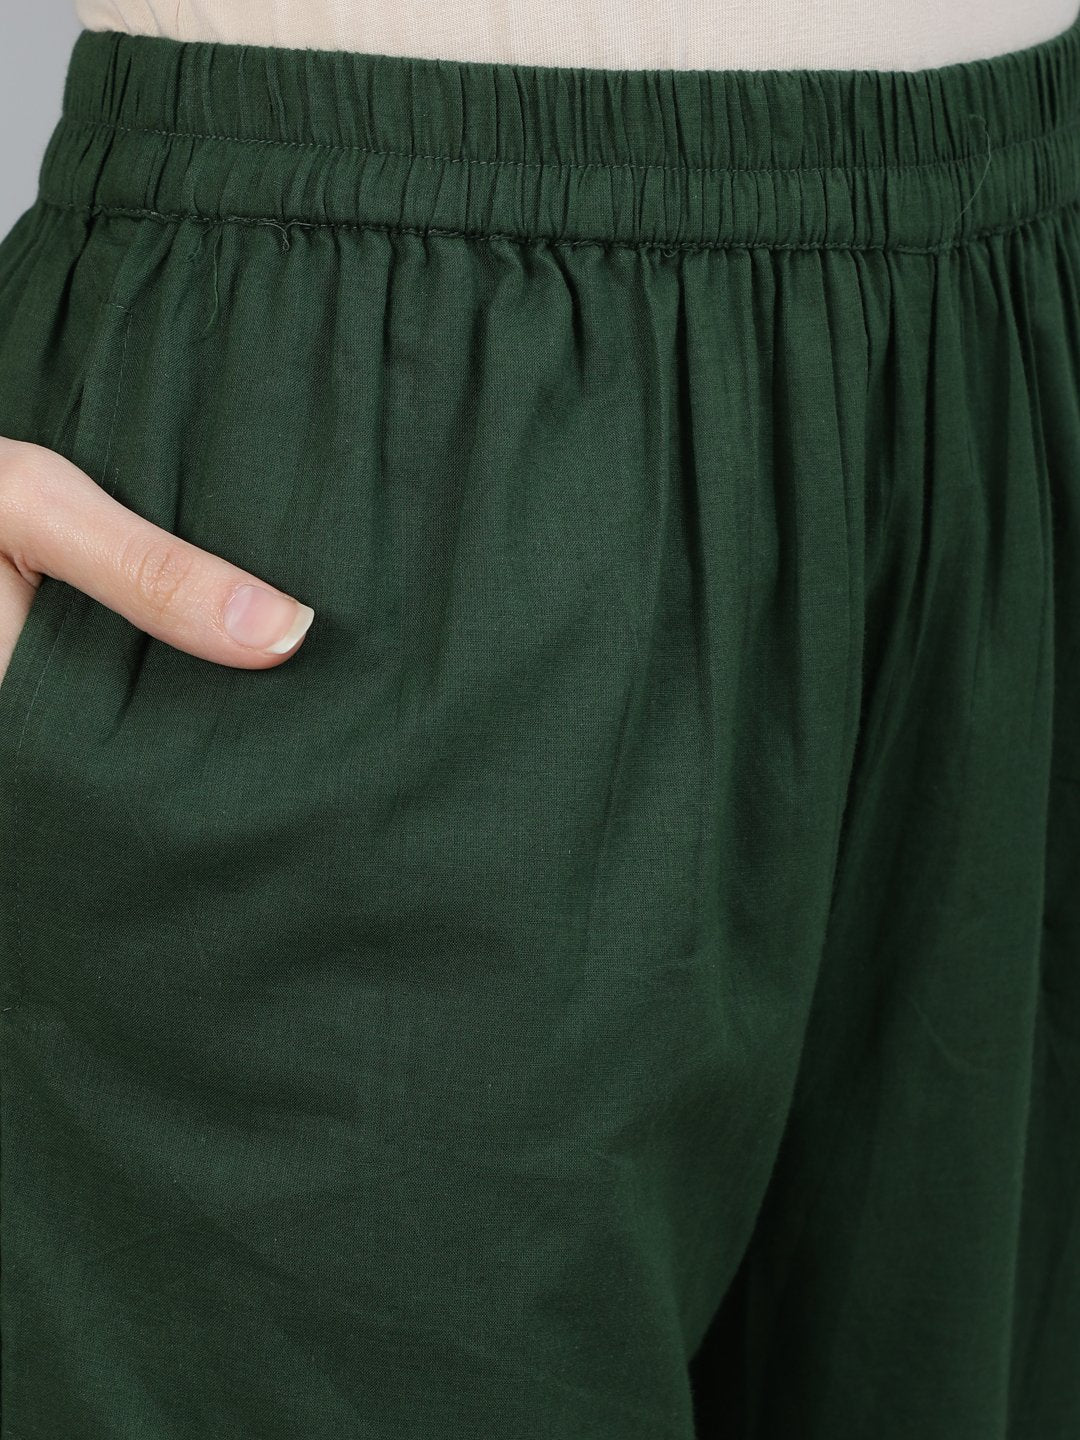 Ishin Women's Green Bandhani Printed Straight Kurta With Trouser